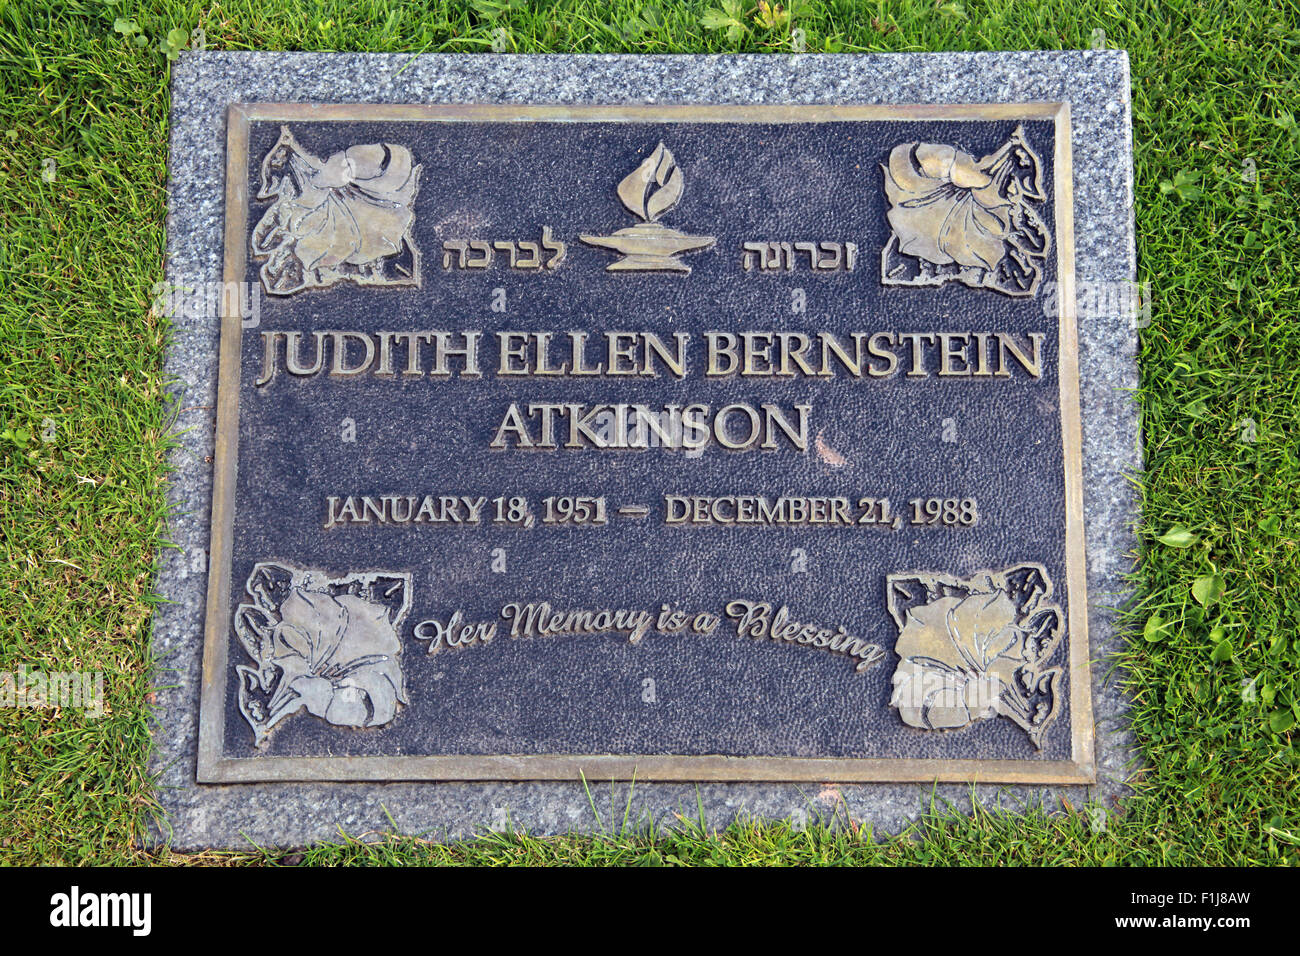 Lockerbie PanAm103 In Erinnerung Memorial Judith Ellen Bernstein Atkinson der jüdischen Religion, Schottland Stockfoto